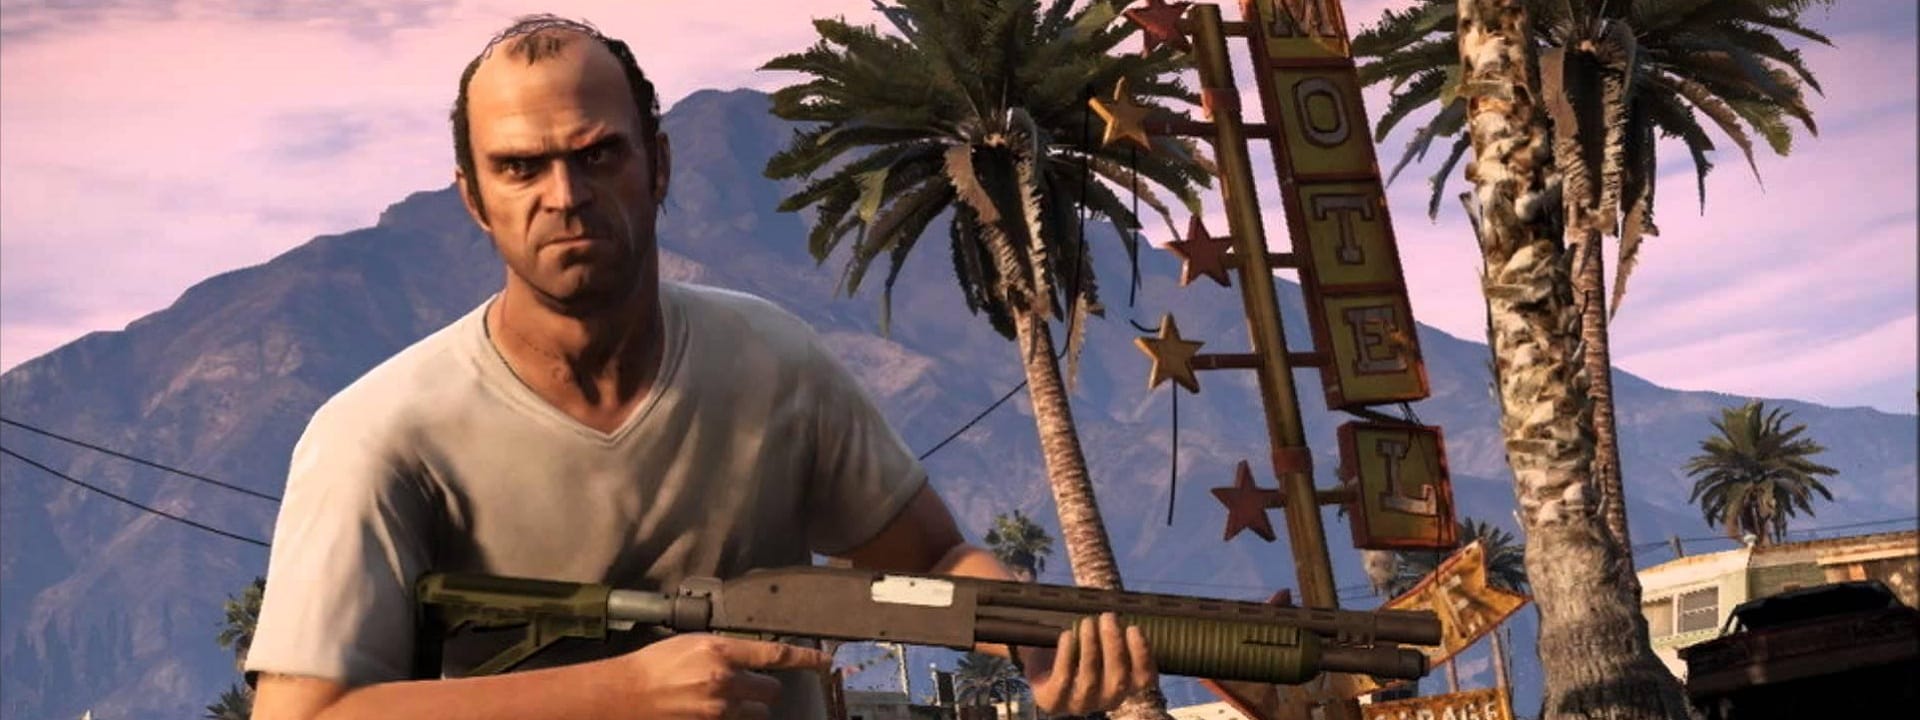 Grand Theft Auto V Sold 130 Million Units